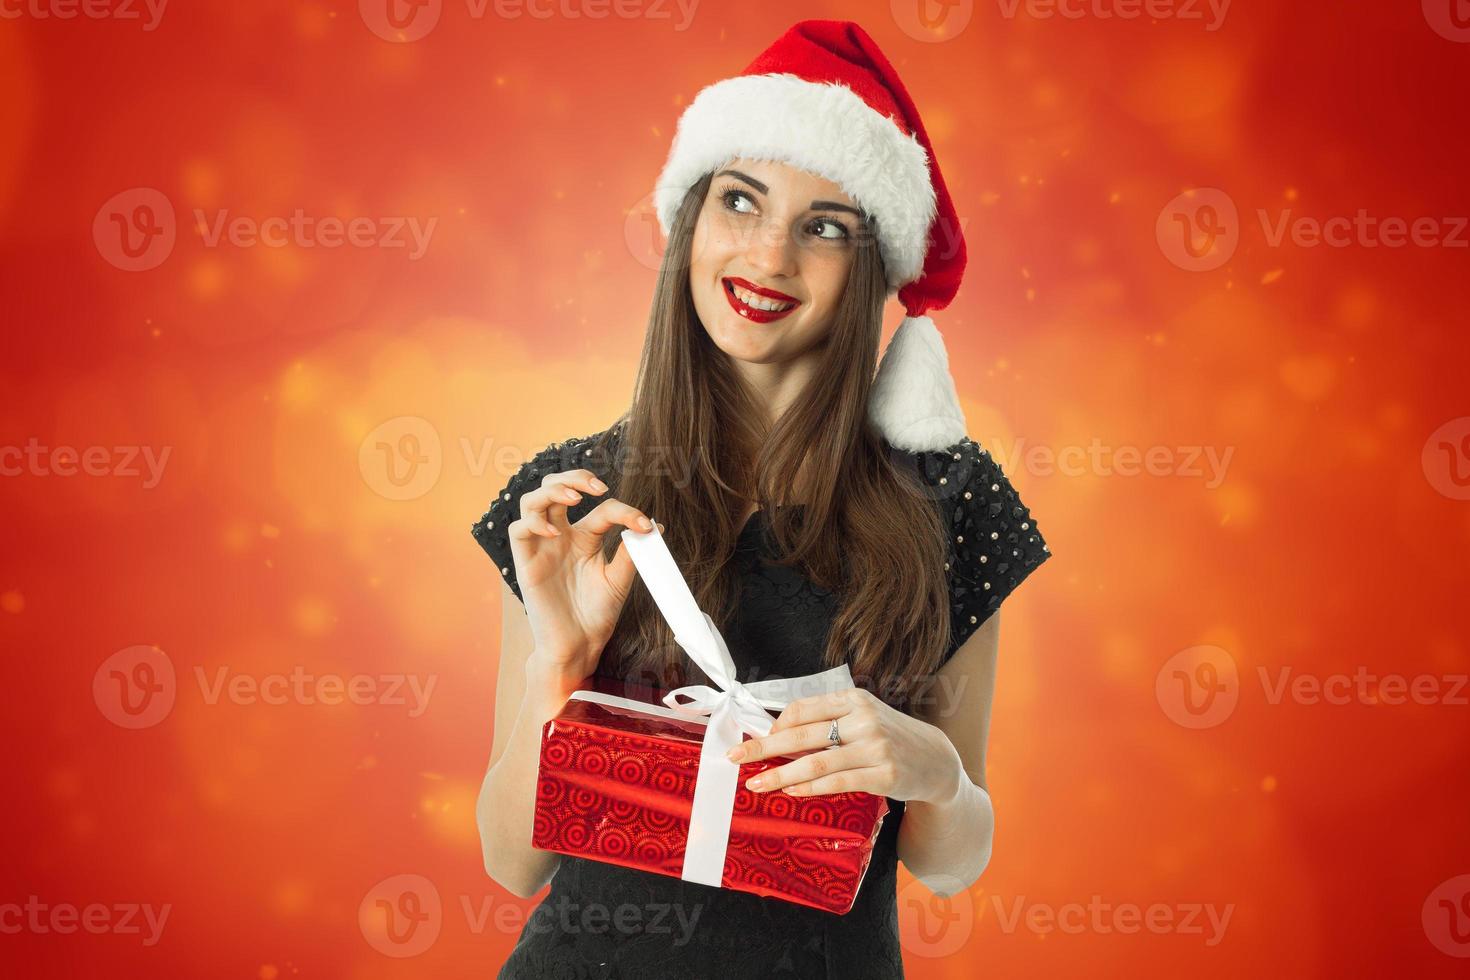 cutie brunette woman in santa hat photo